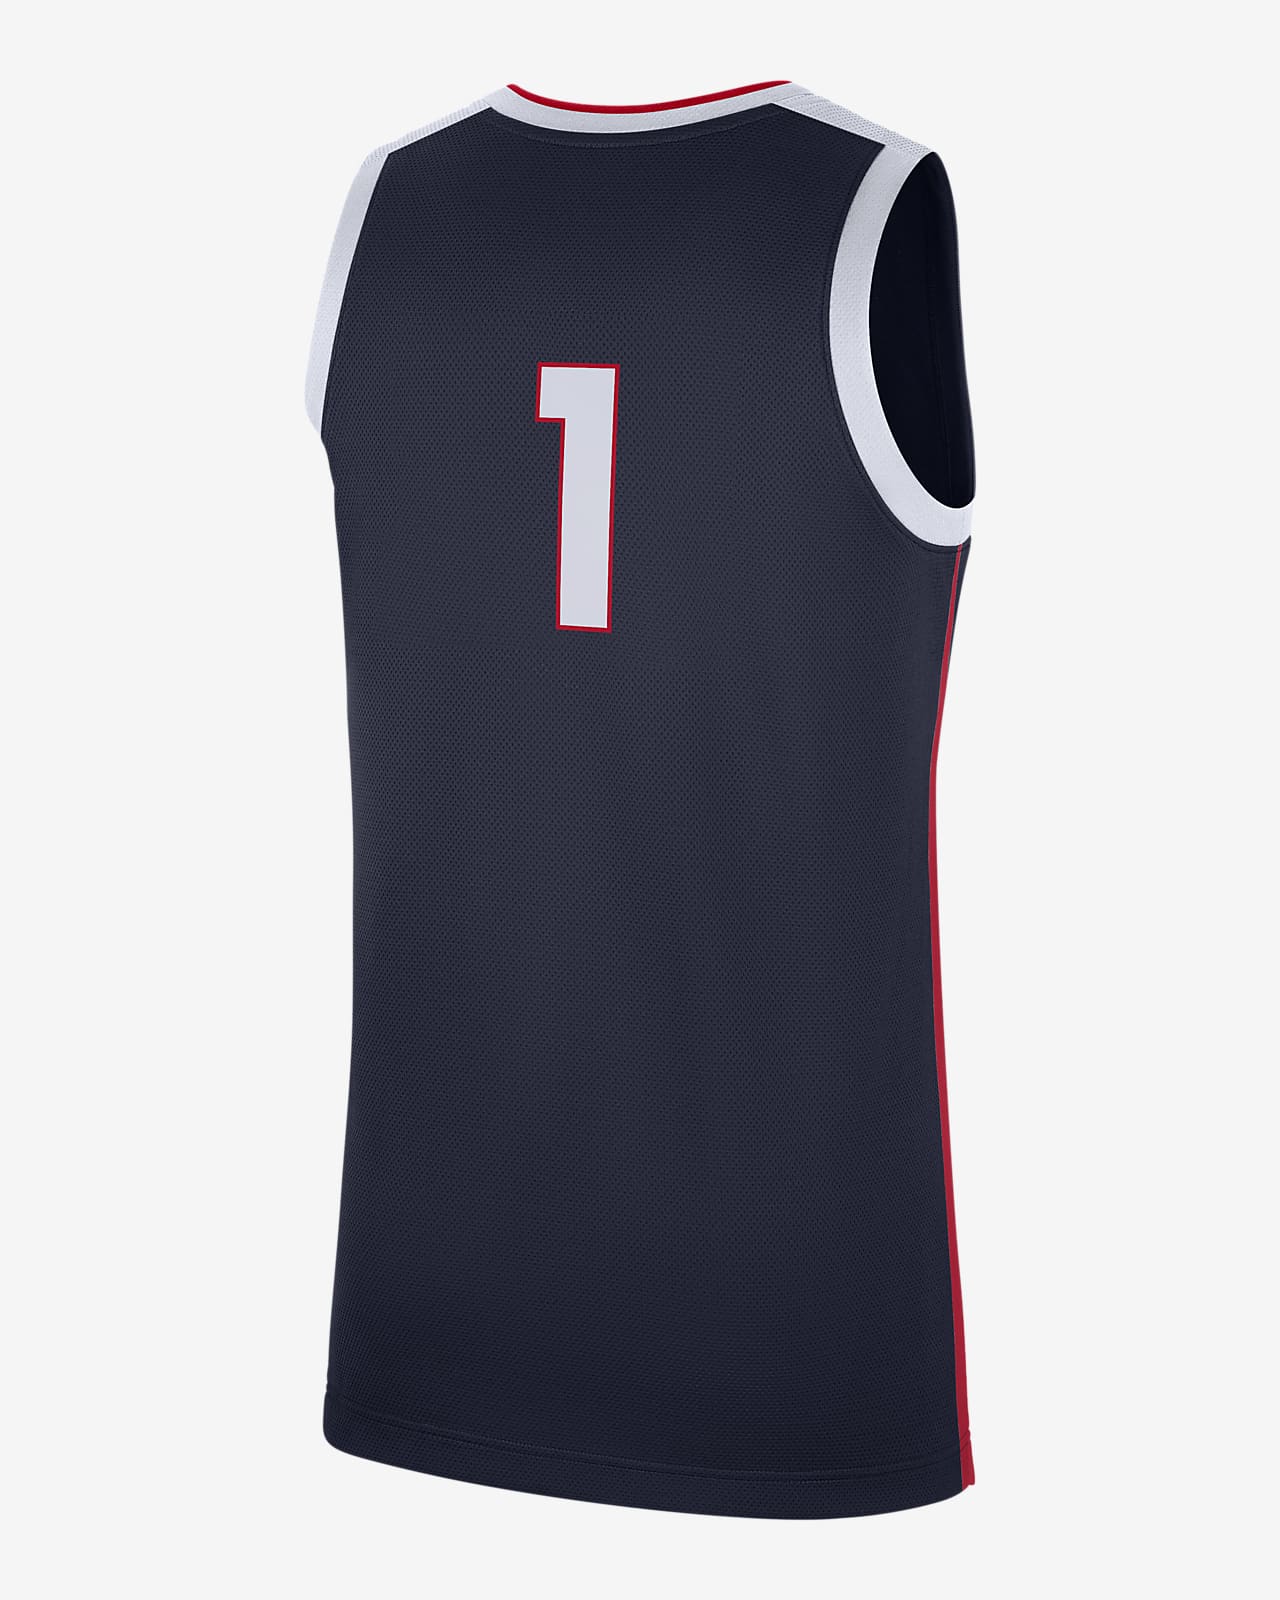 Camiseta de básquetbol para College Replica (Gonzaga). Nike.com